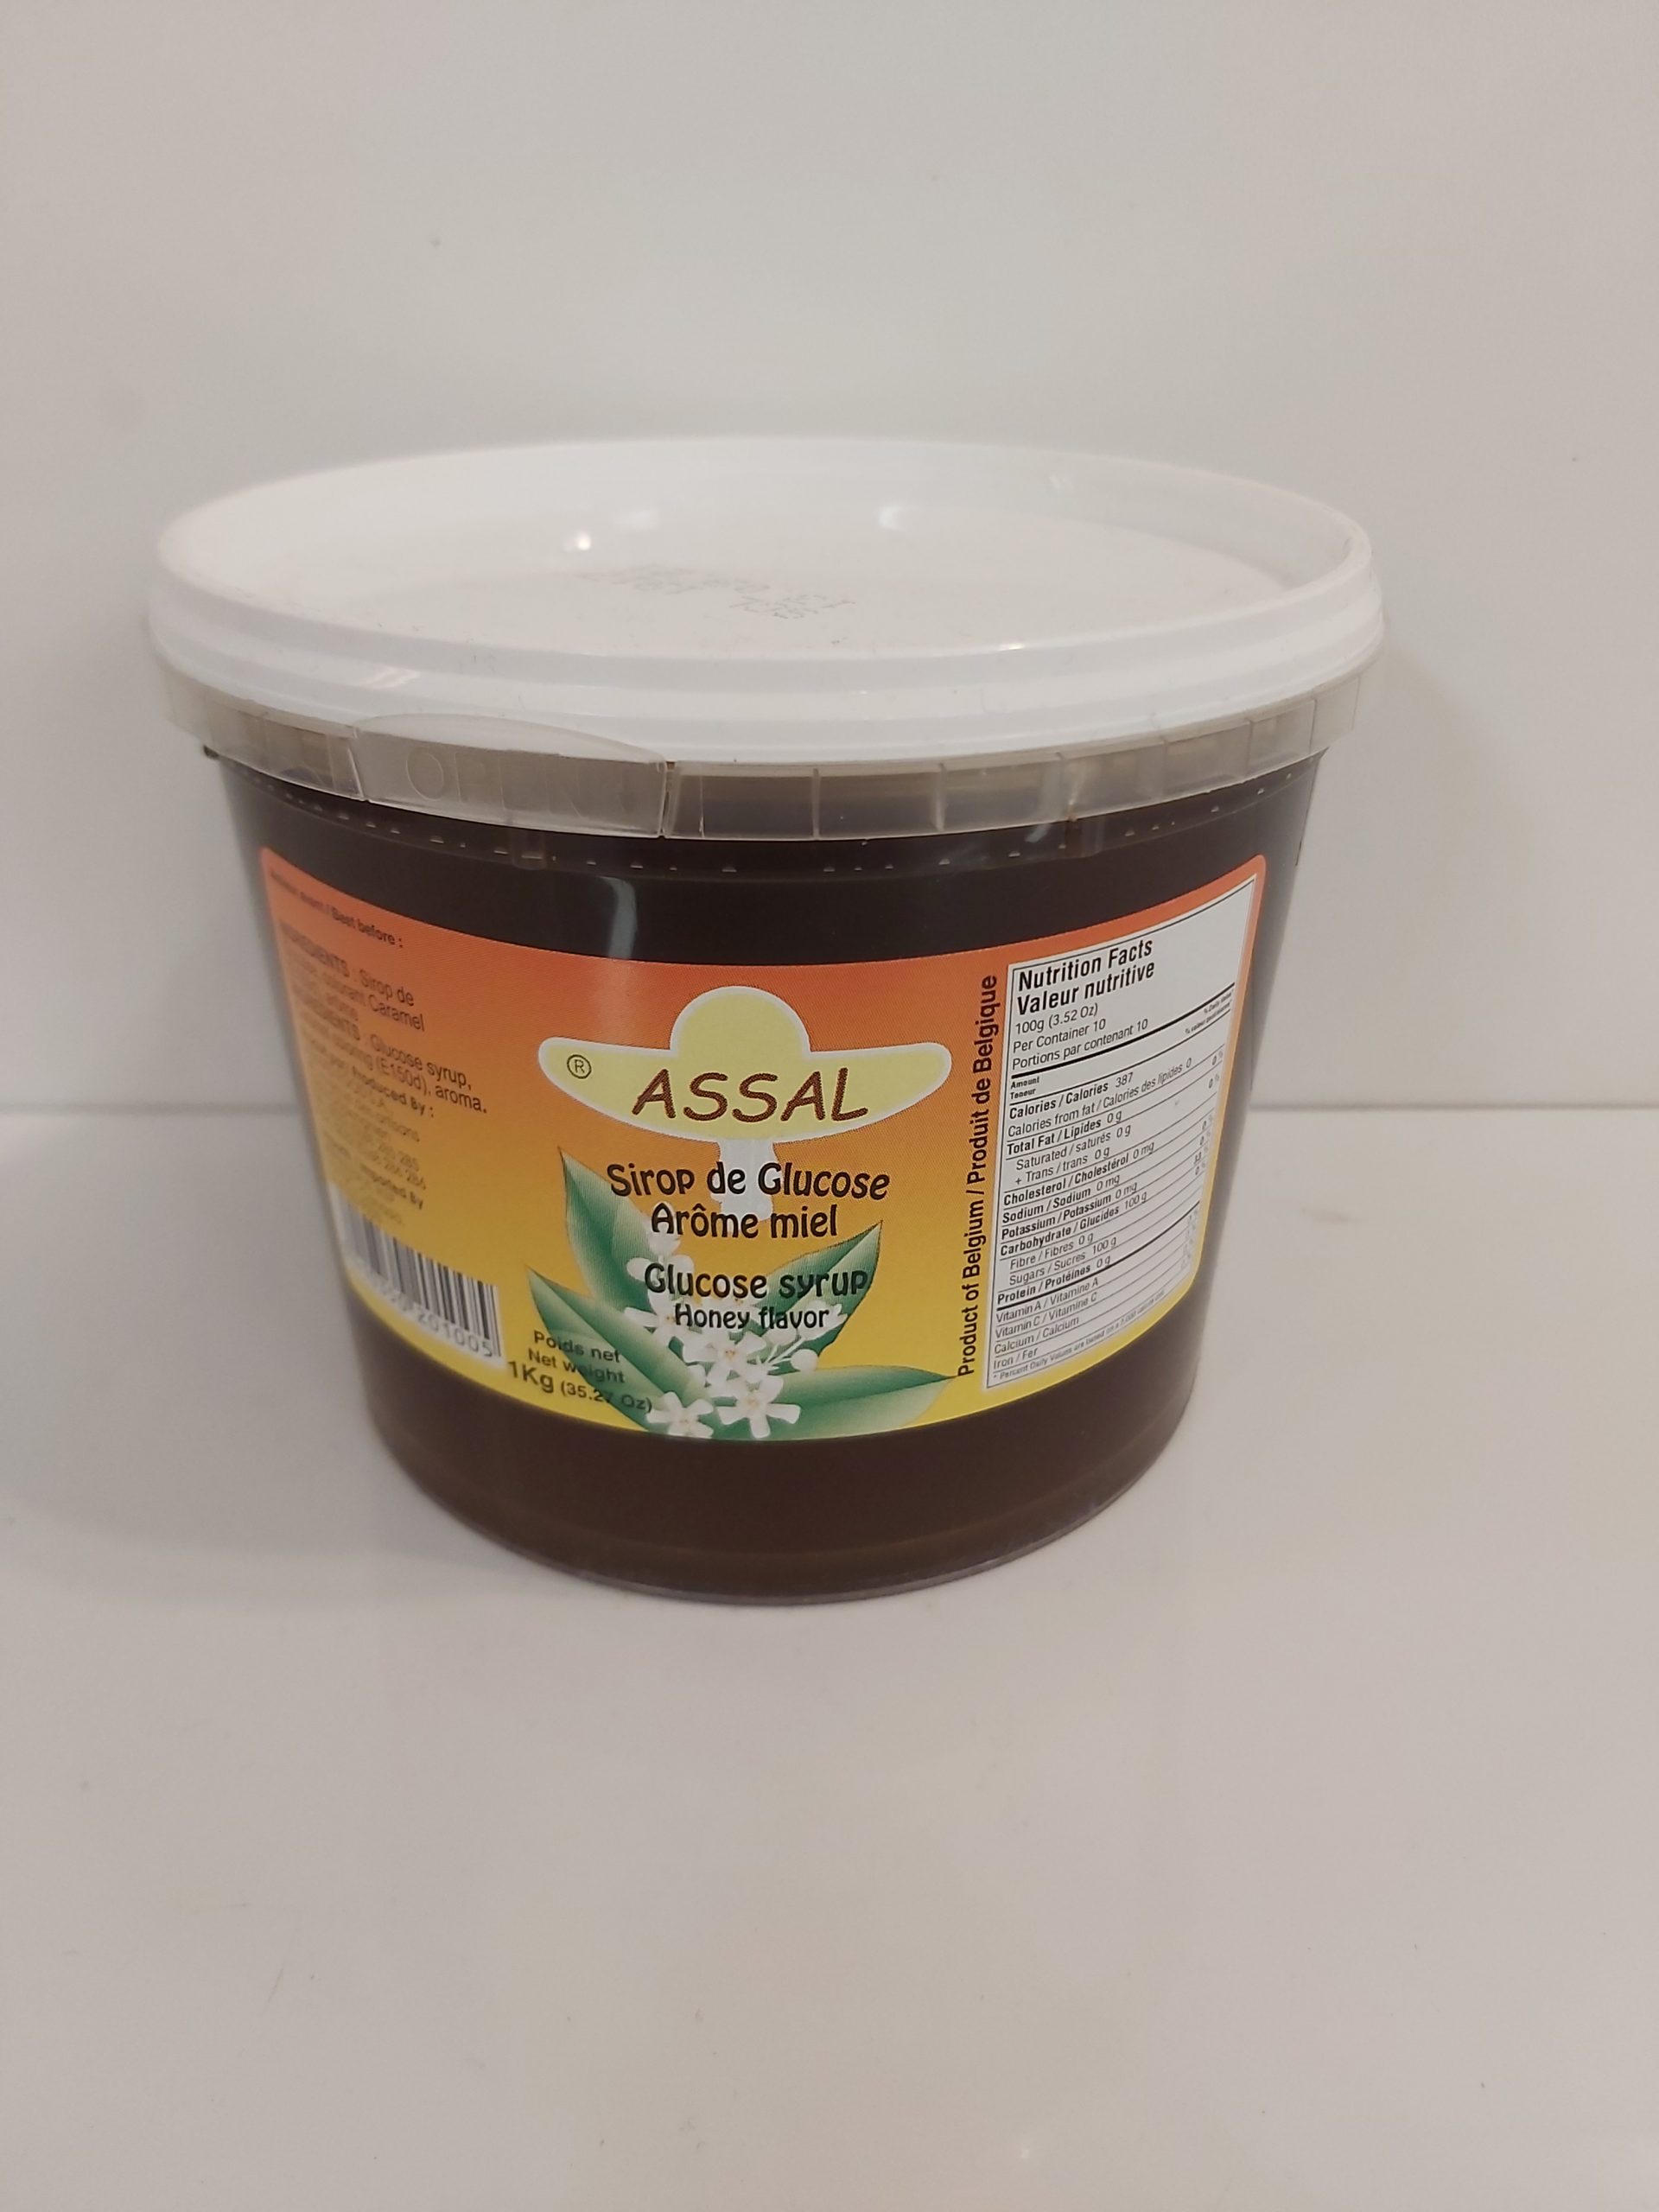 Sirop de glucose aromatise au miel 1kg (Mosaique)